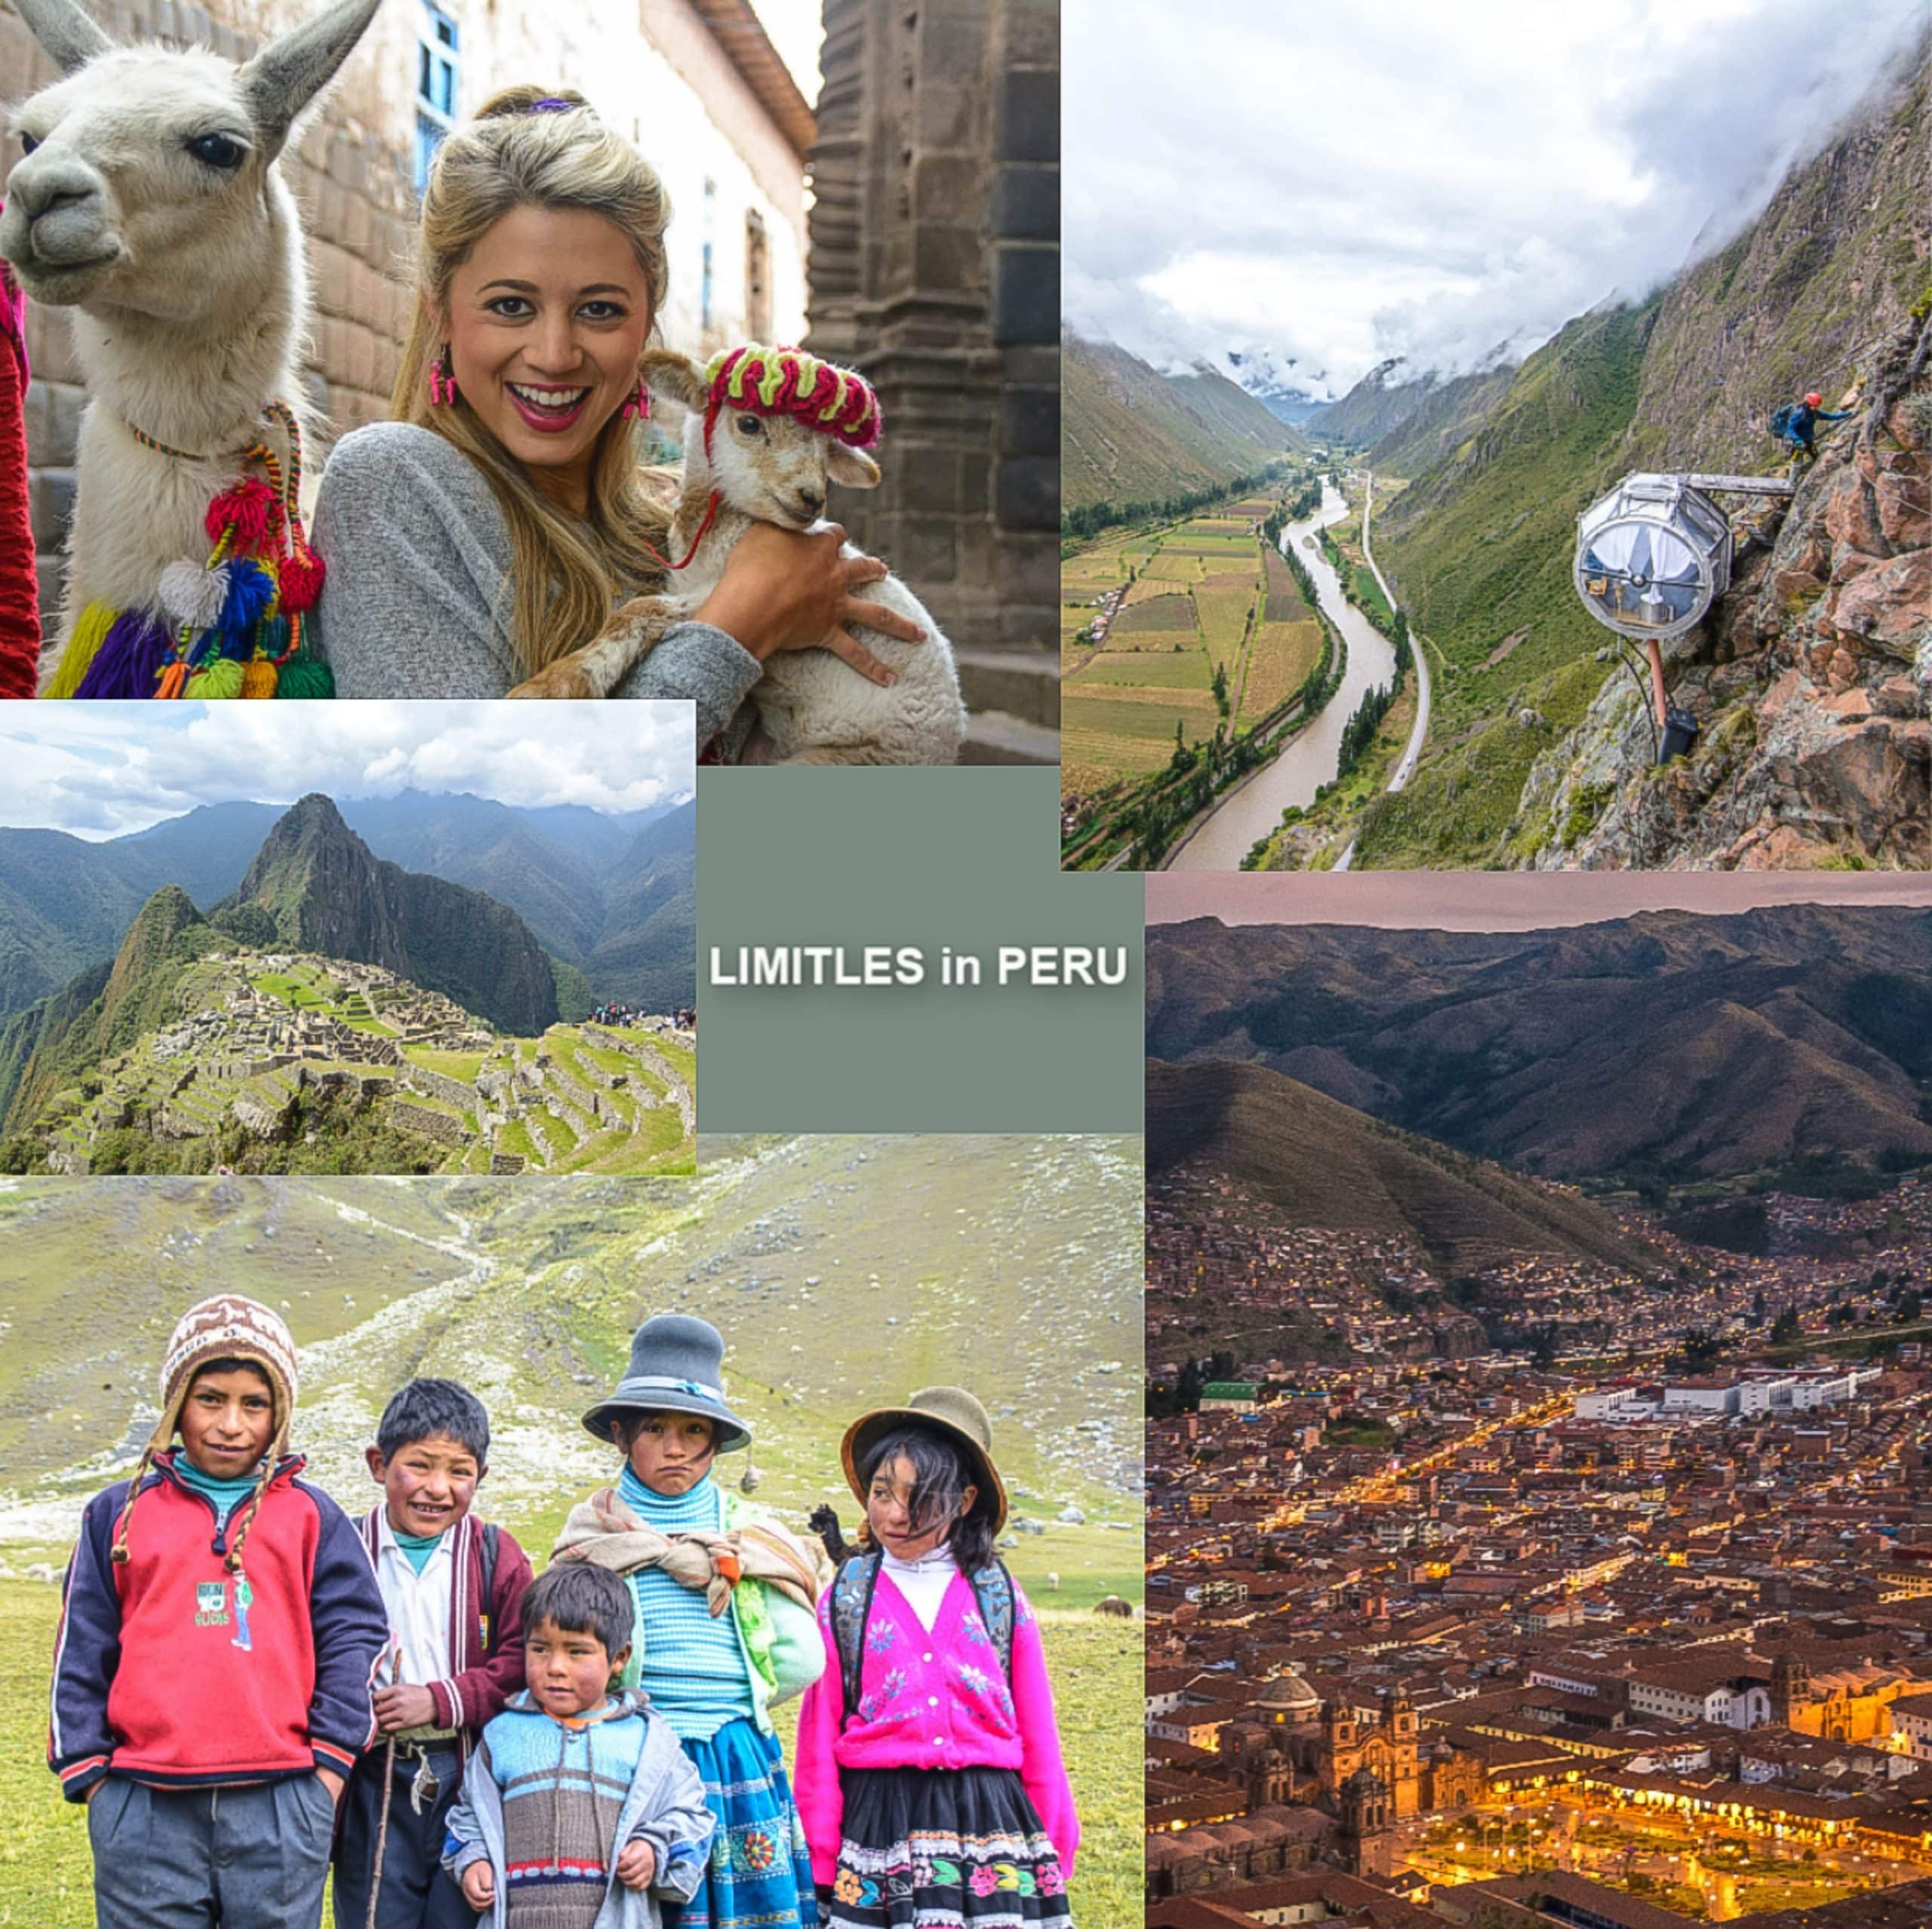 LimitLes in Peru